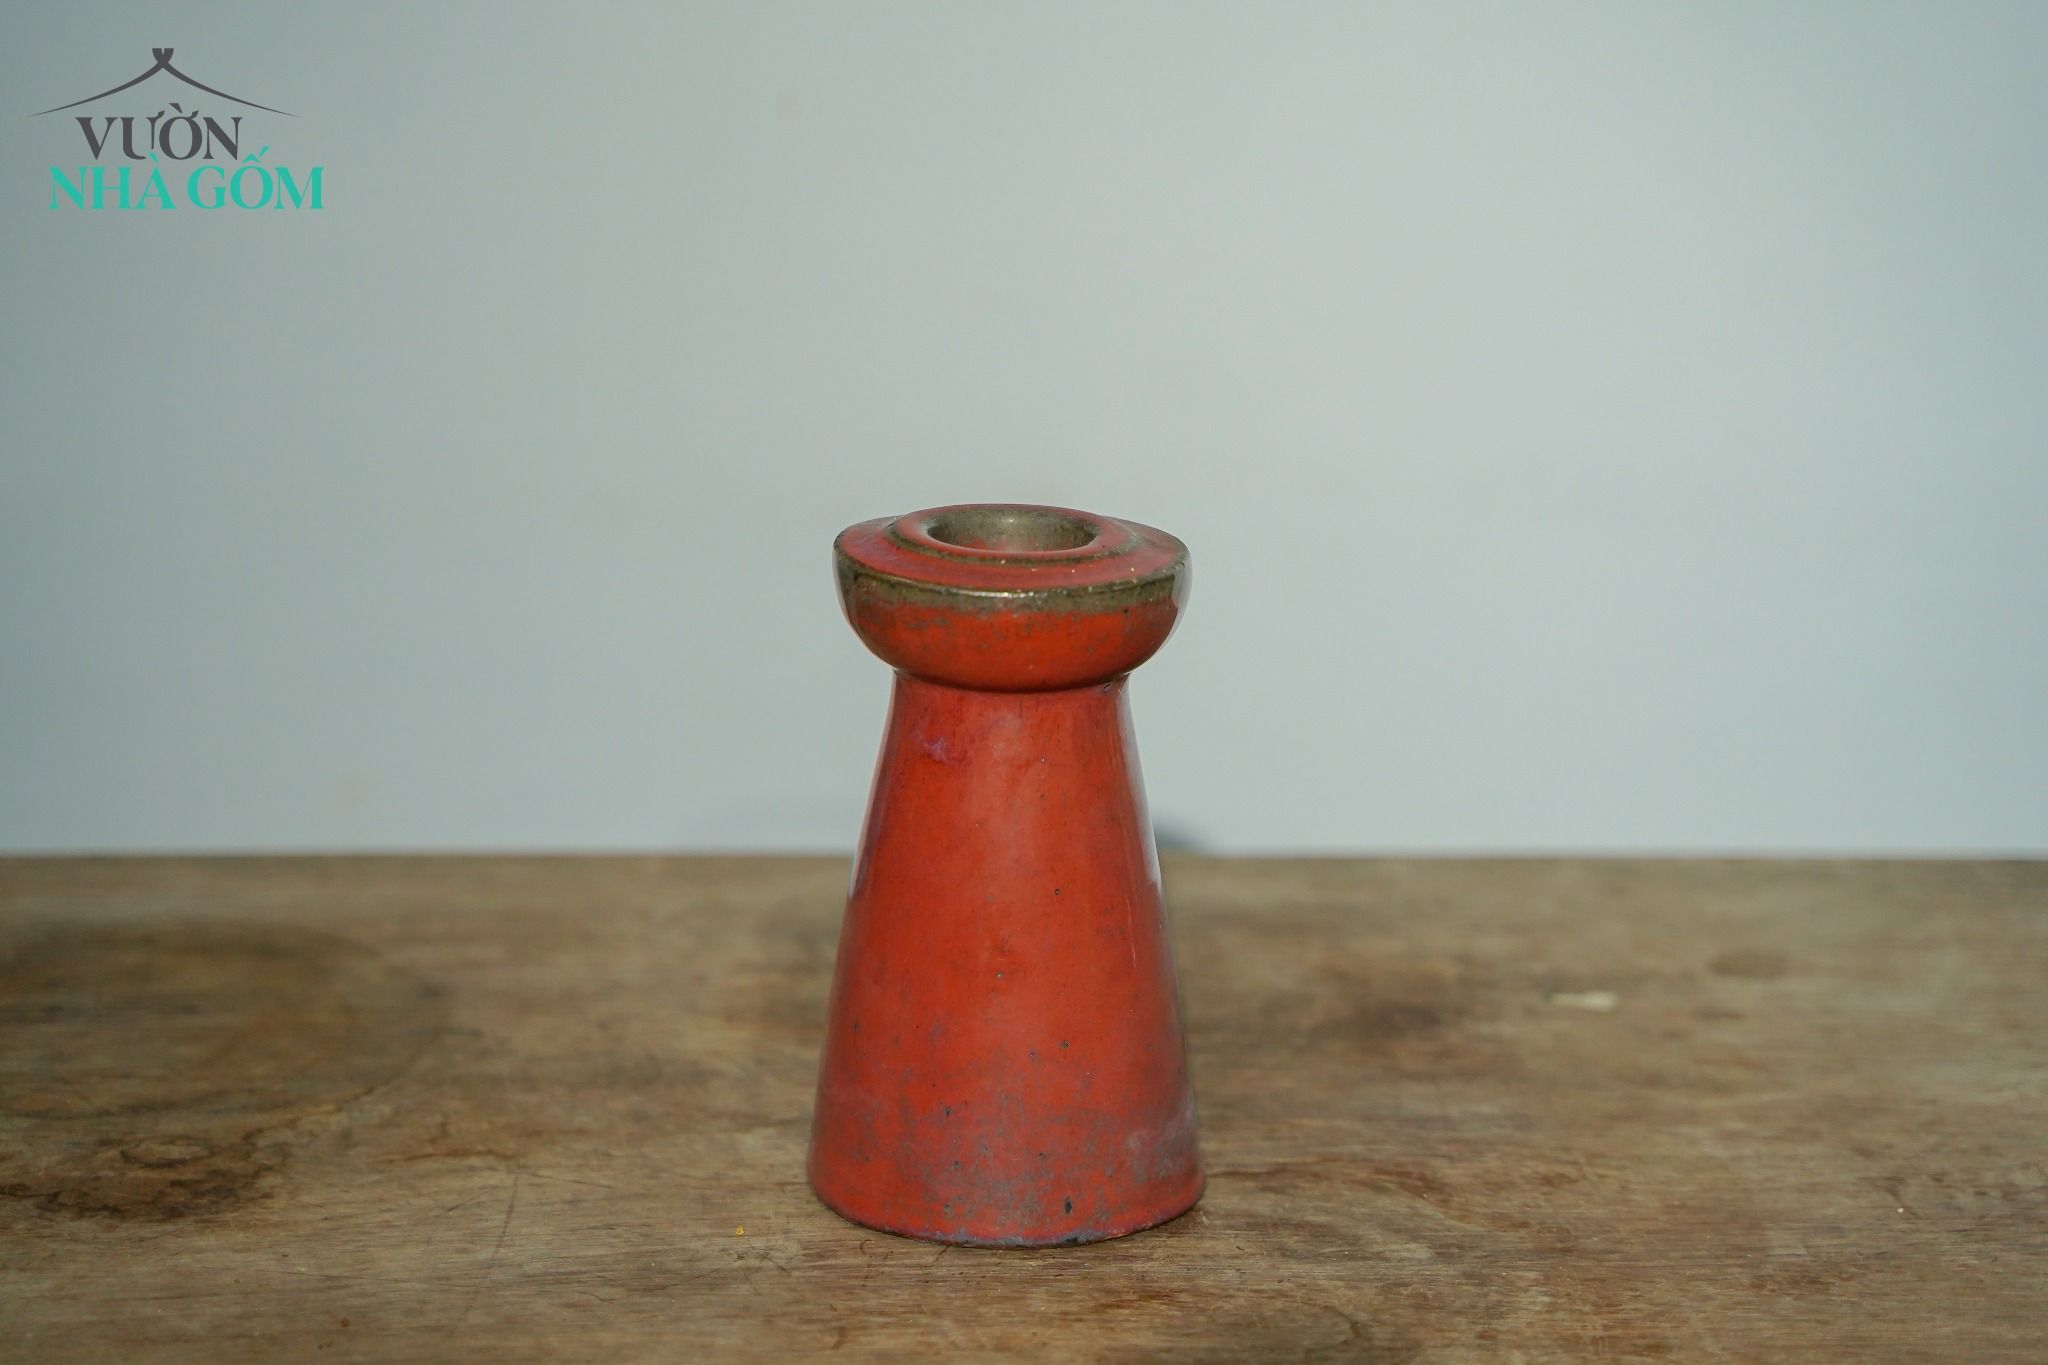  Chân đèn cầy hình nấm (C16xR9), gốm Nam Bộ 